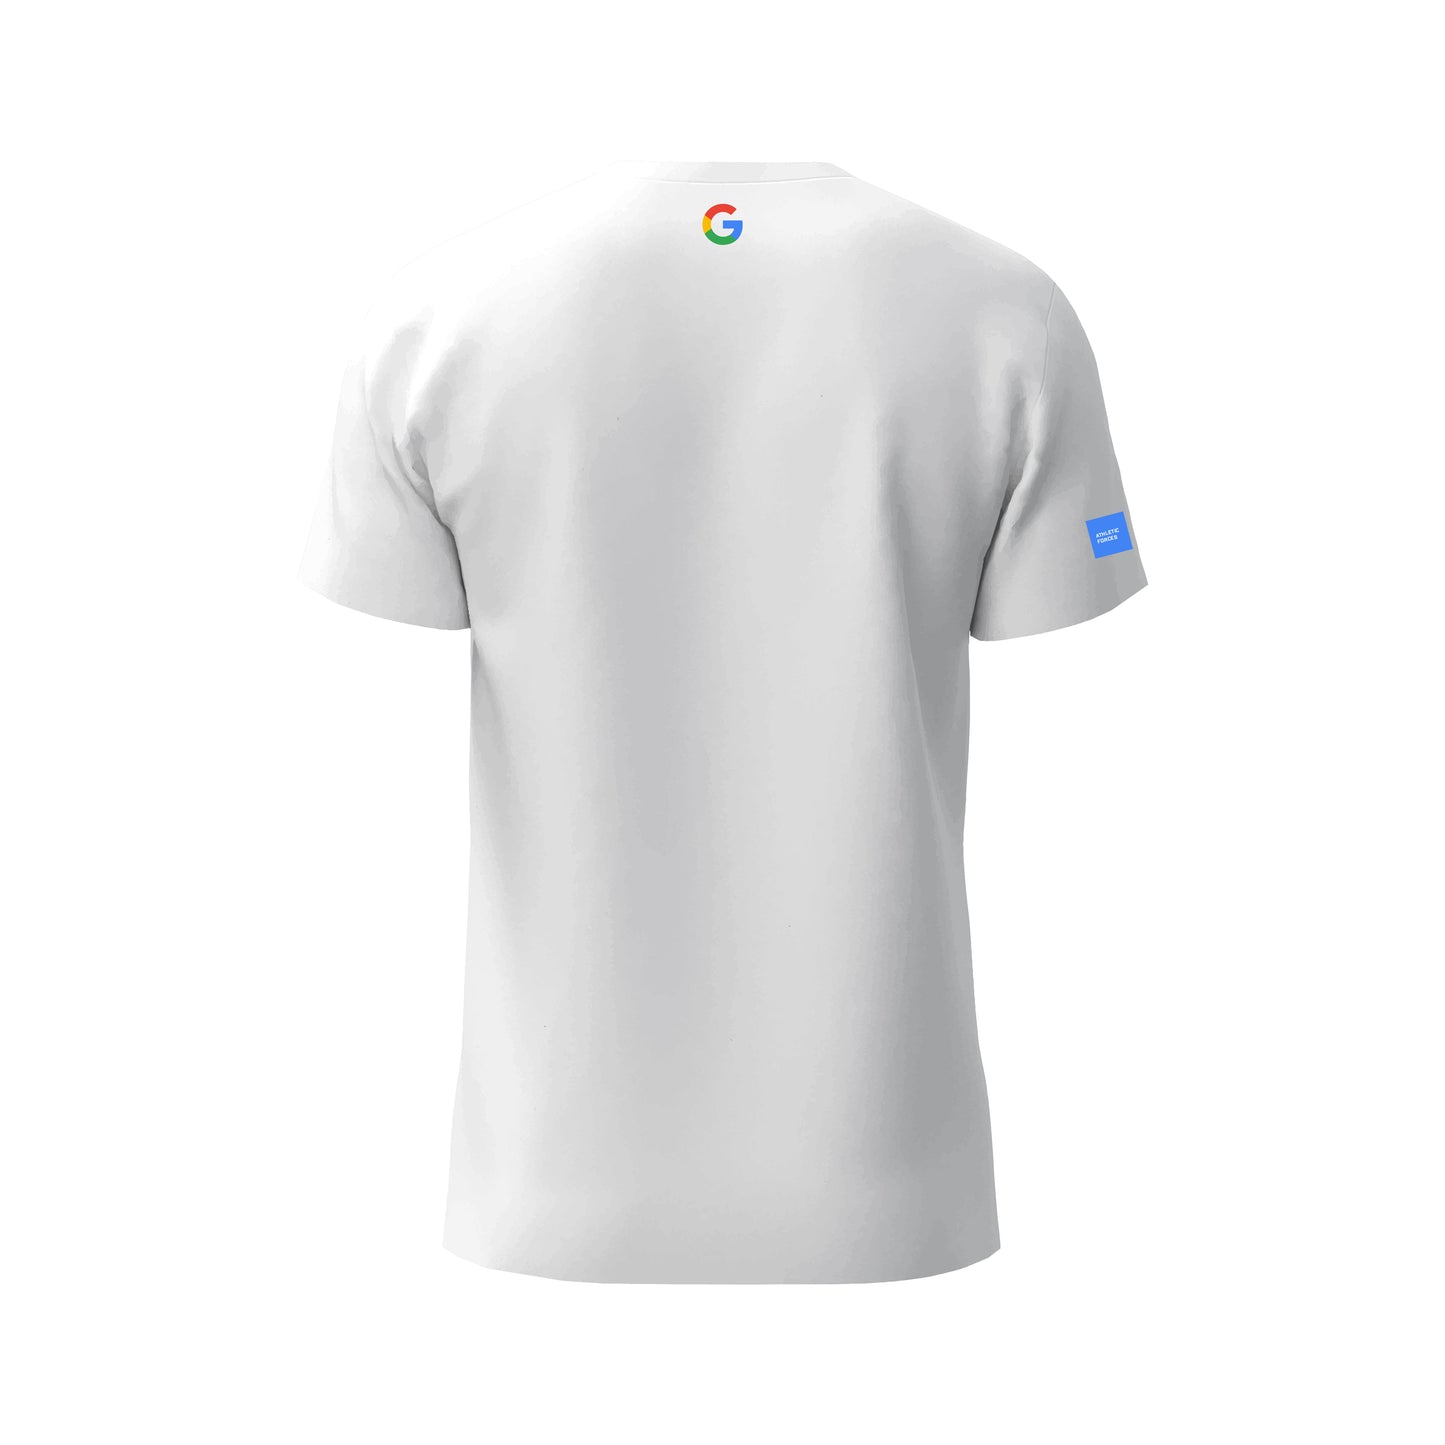 Google - T-Shirt Marine Force ® par Athletic Forces - Modèle 2